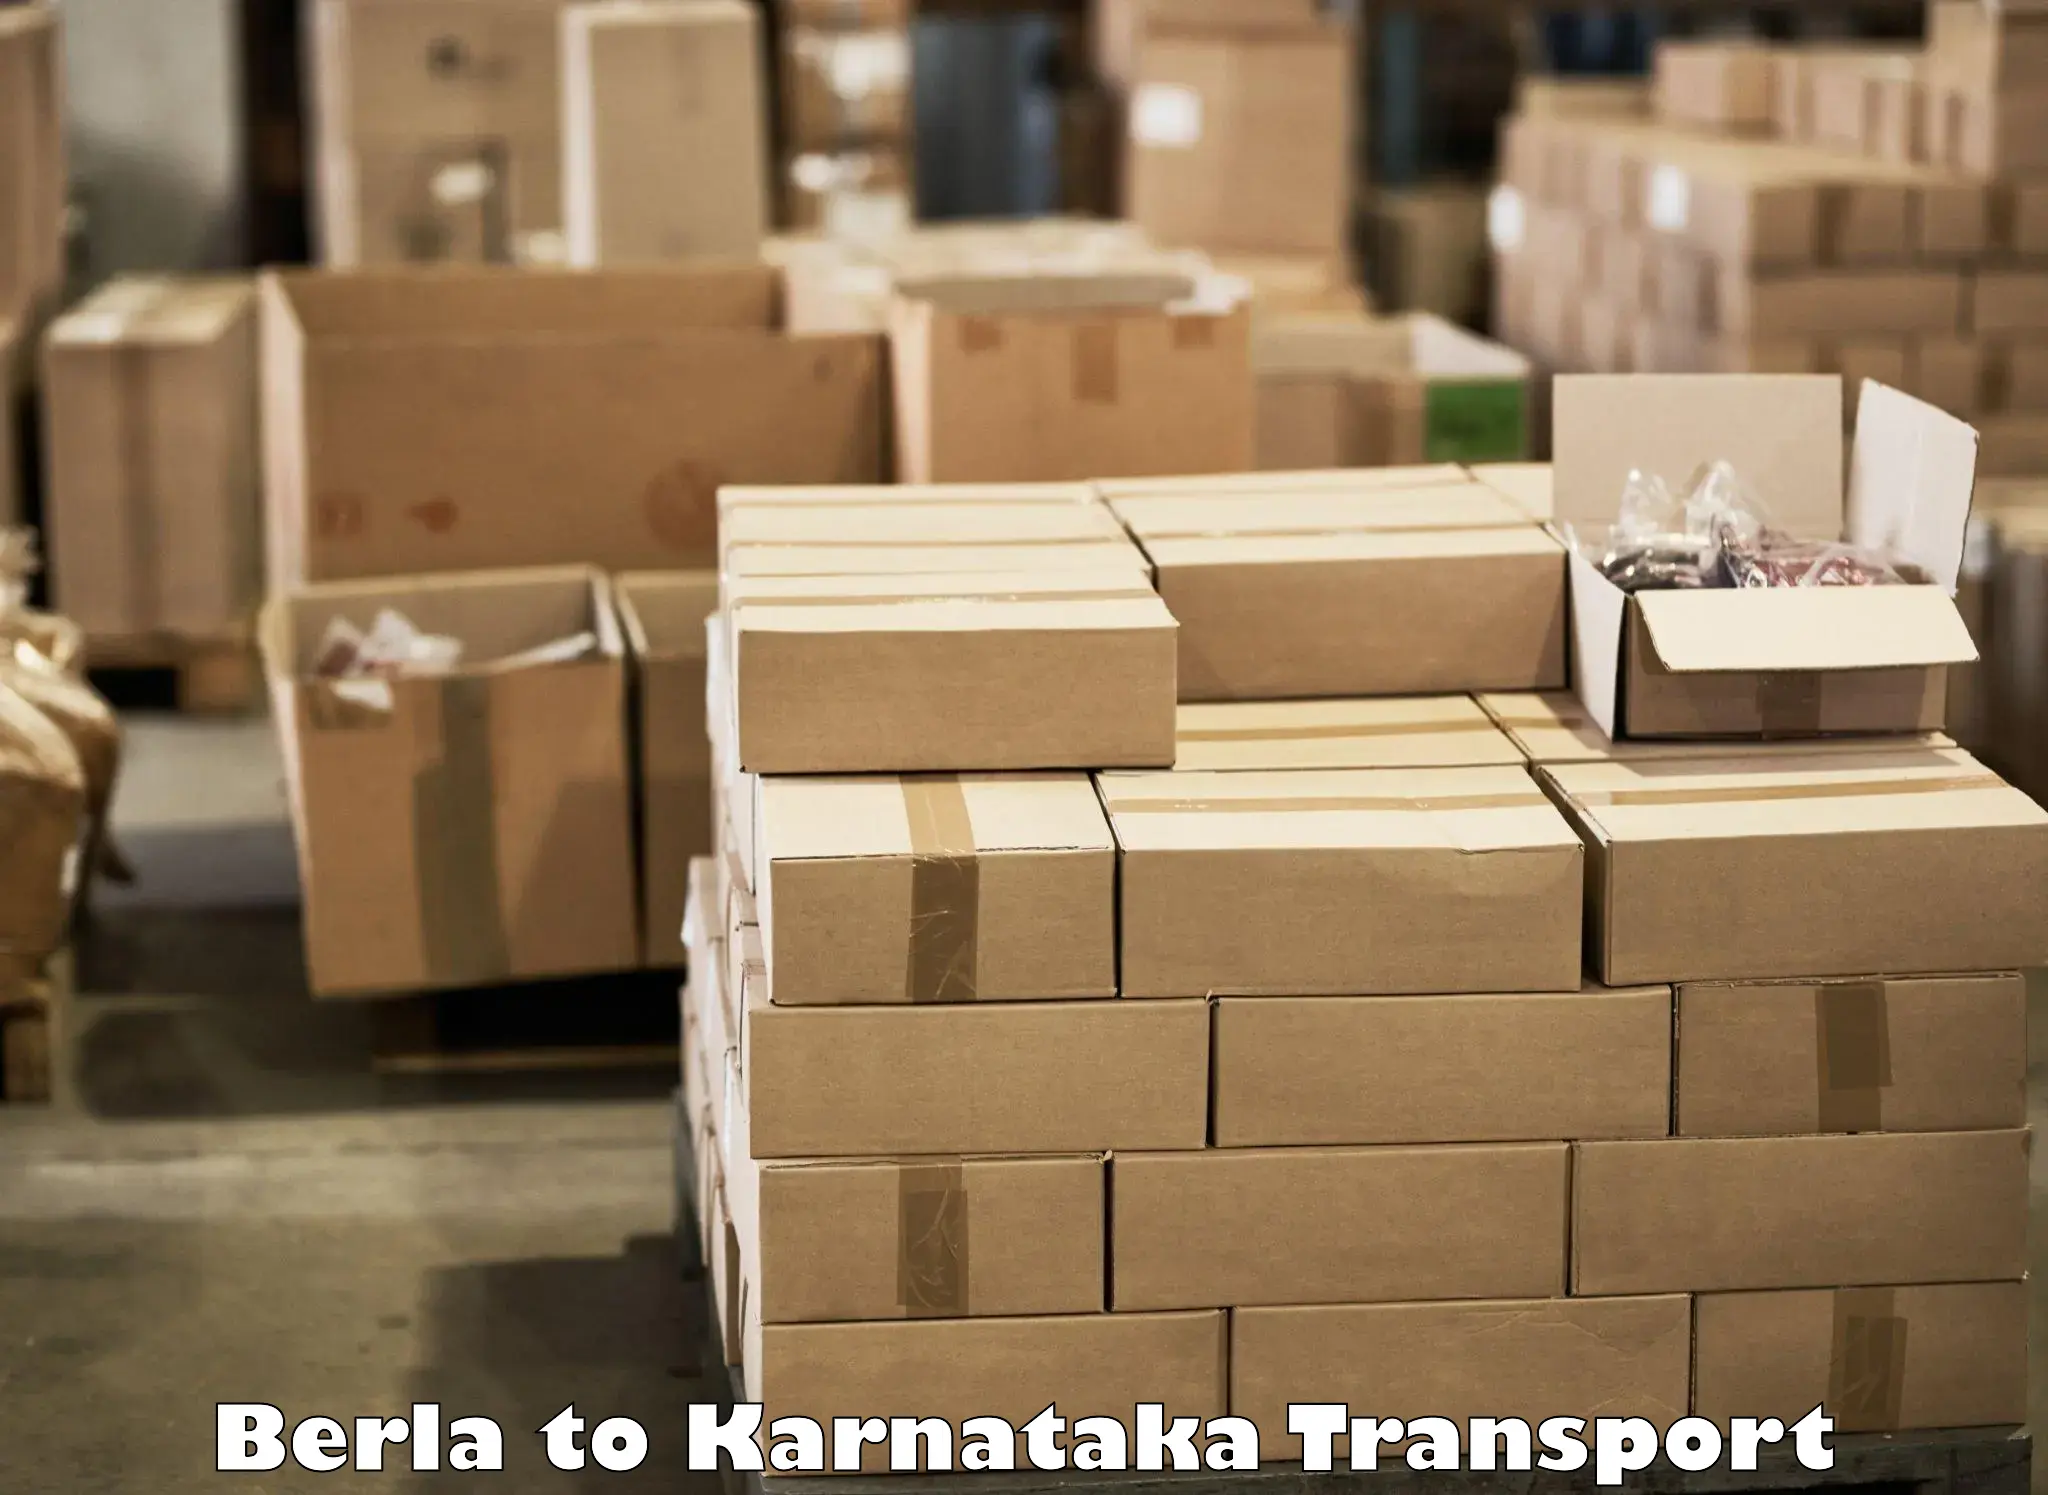 Door to door transport services Berla to Karnataka